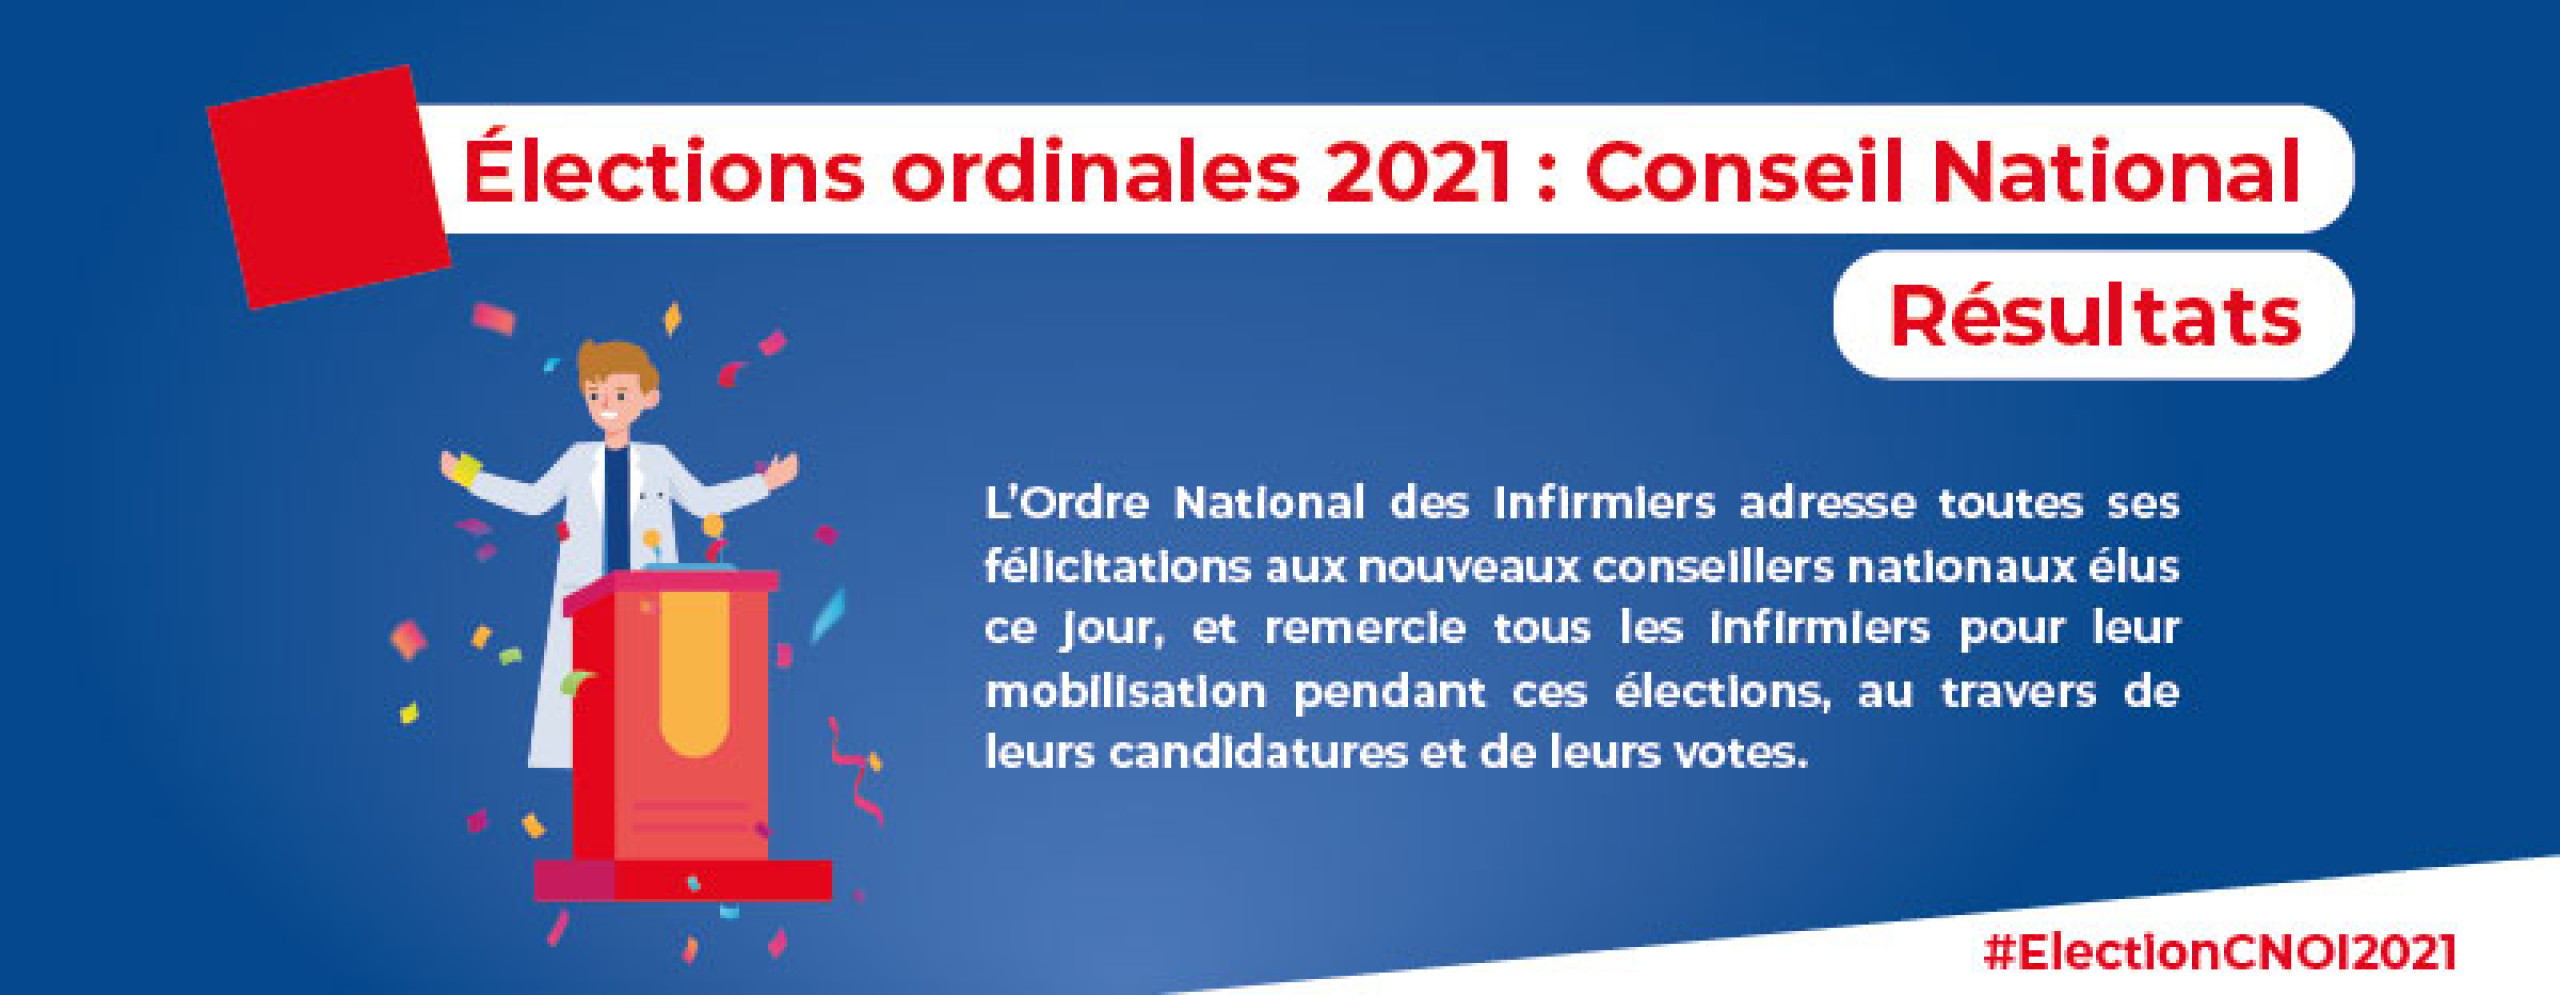 Résultats de l'élection du CNOI 2021 : félicitation aux nouveaux conseillers nationaux